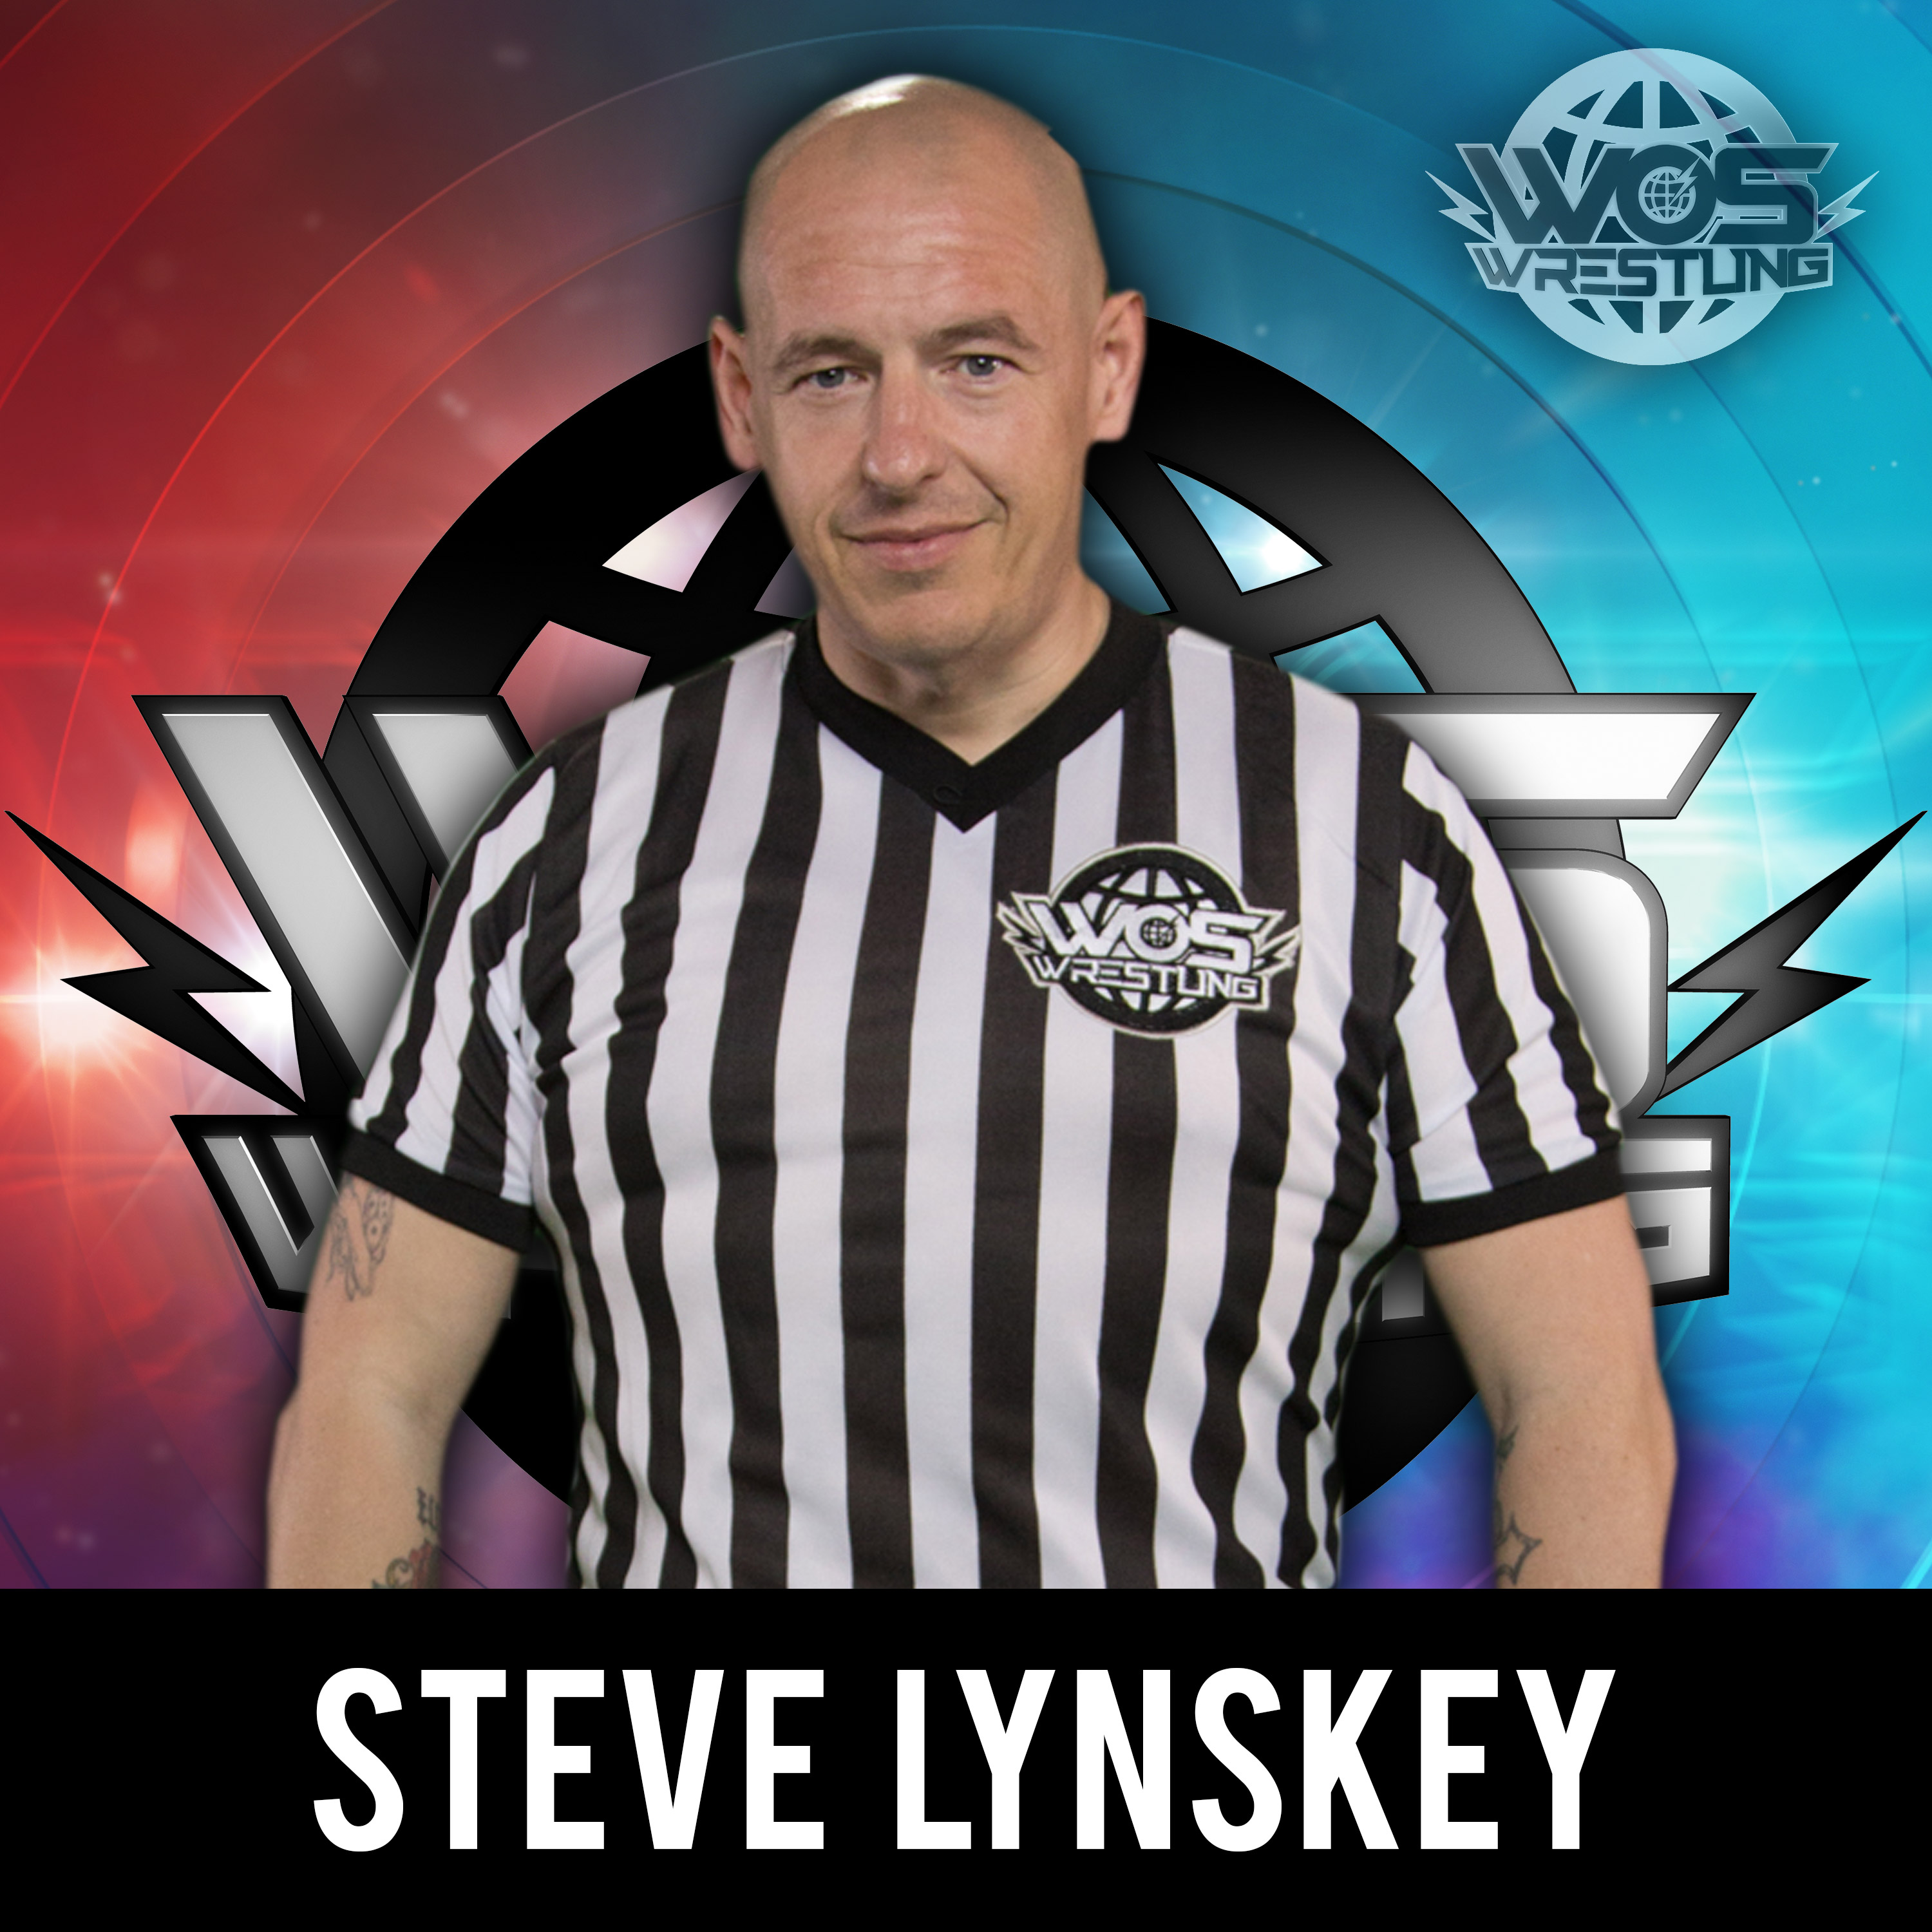 Steve Lynskey